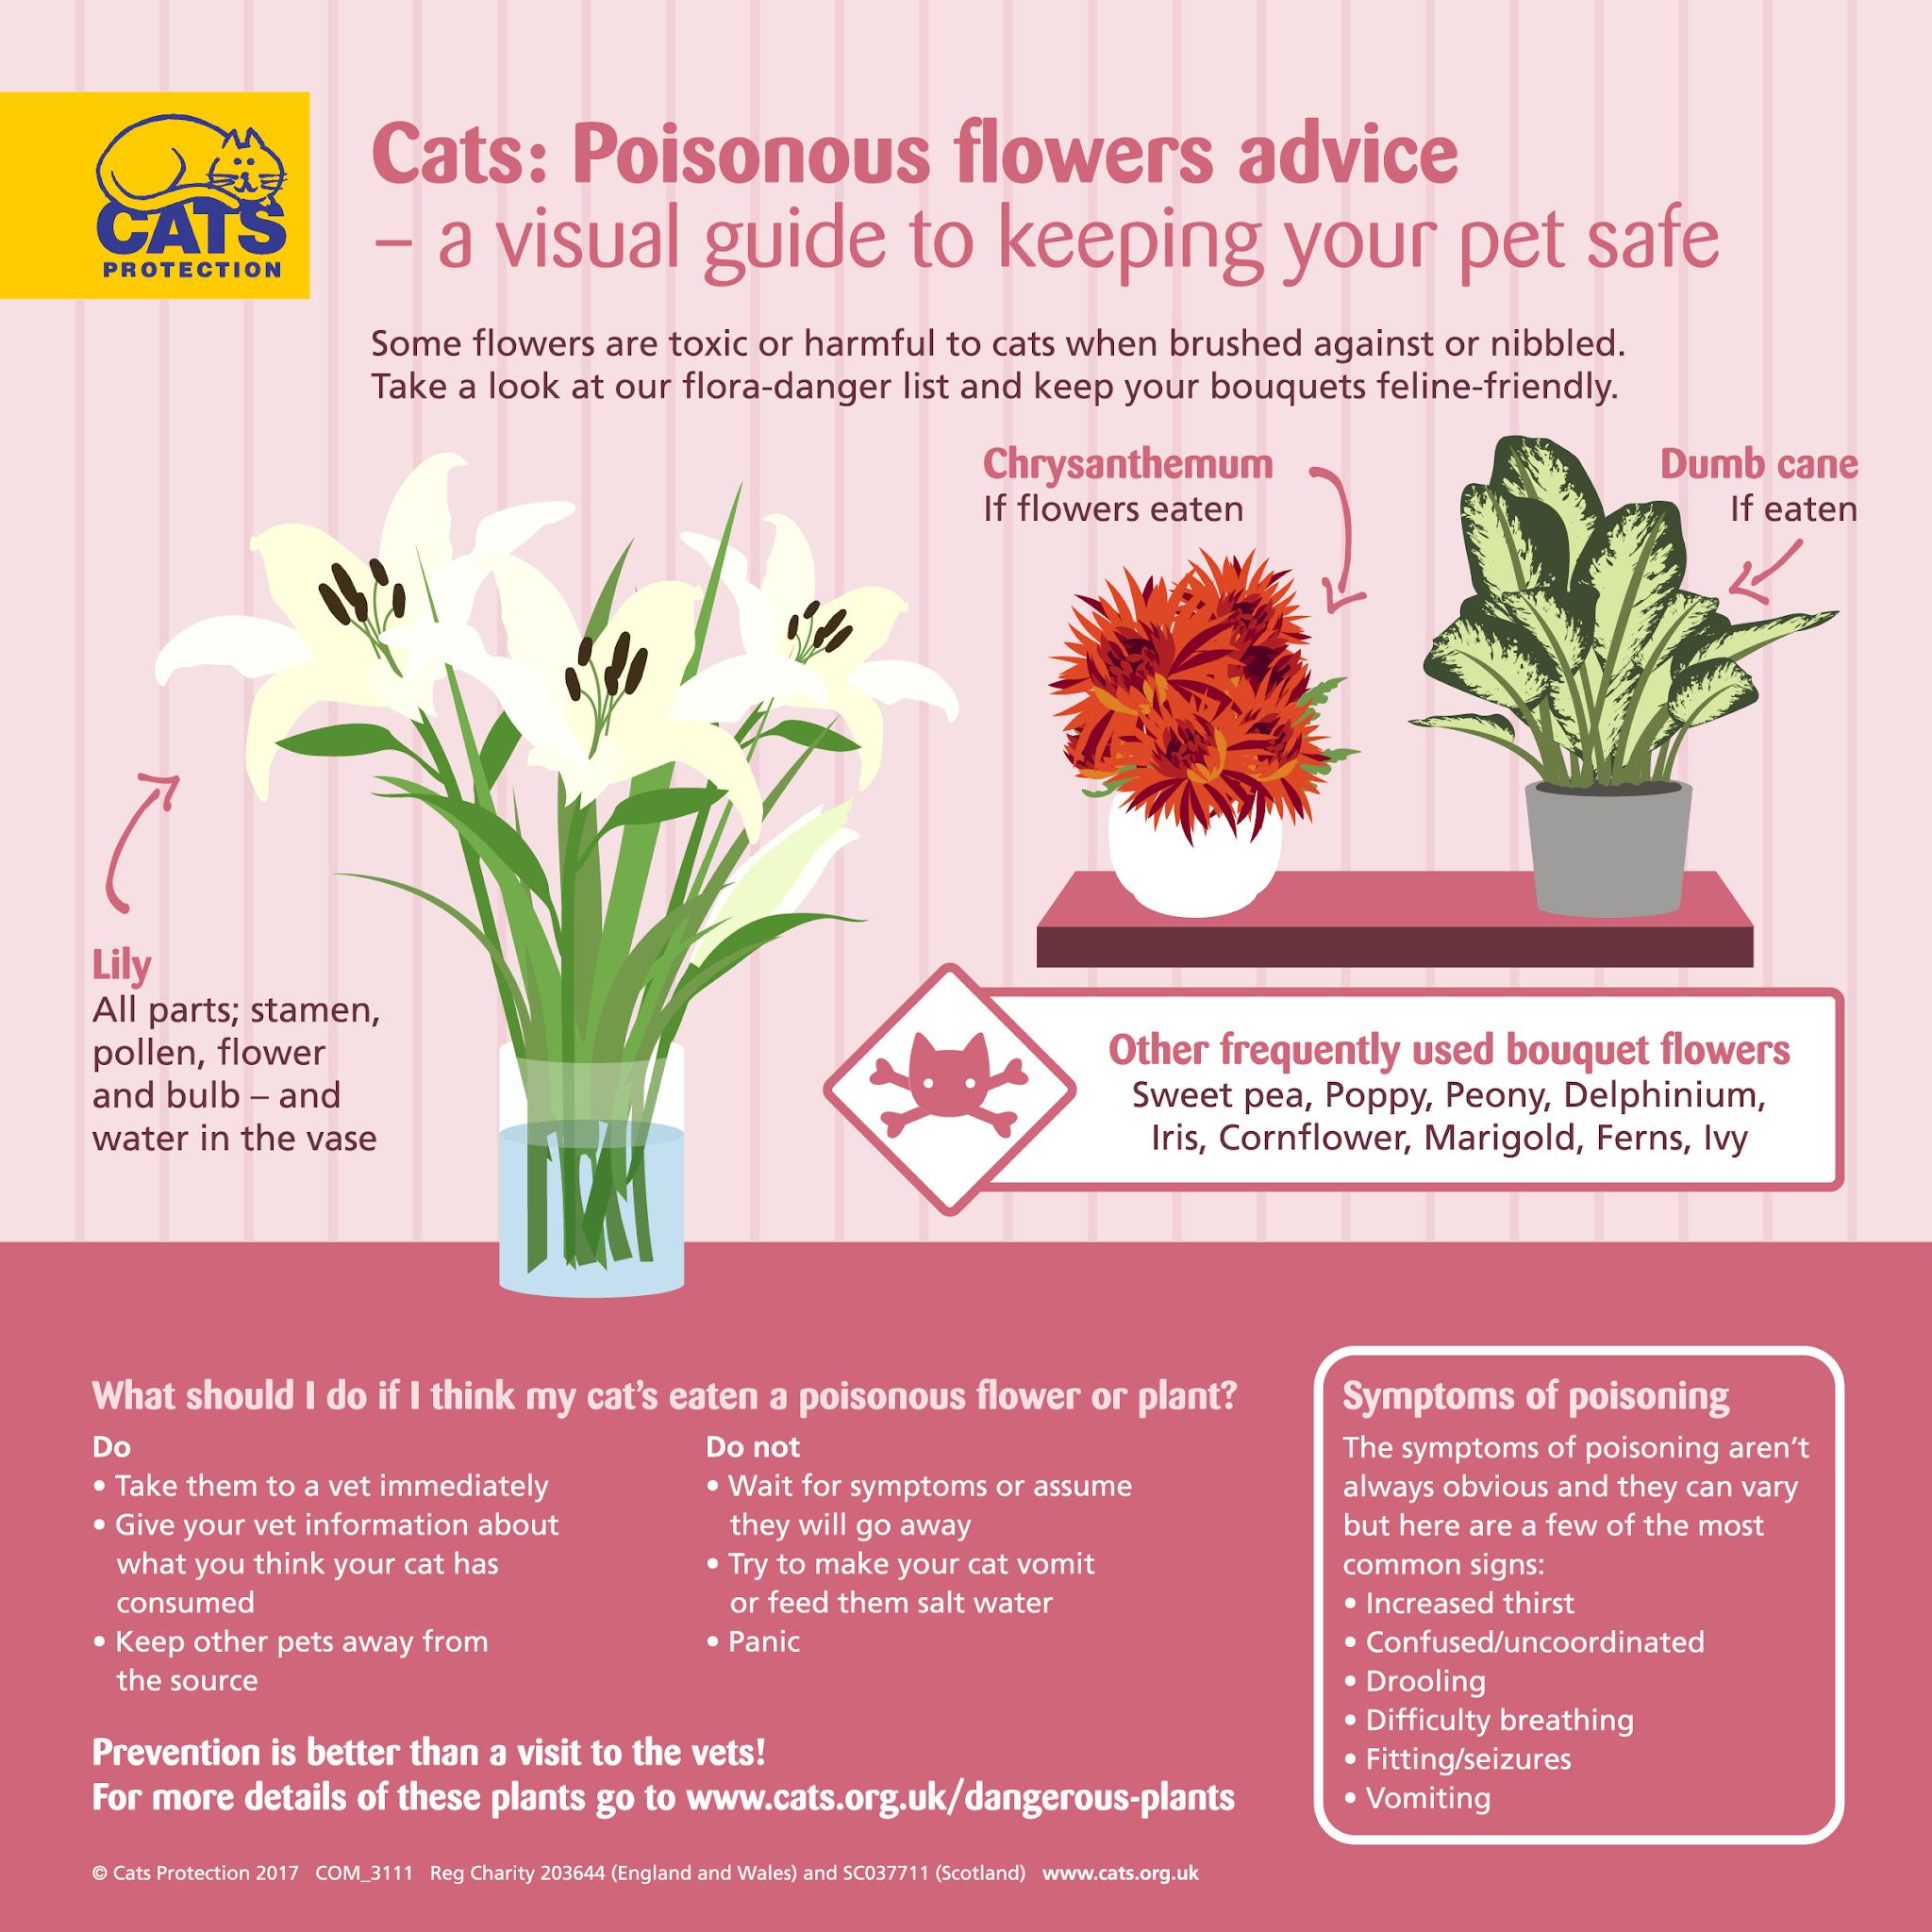 Quais flores são seguras para gatos no Dia das Mães?